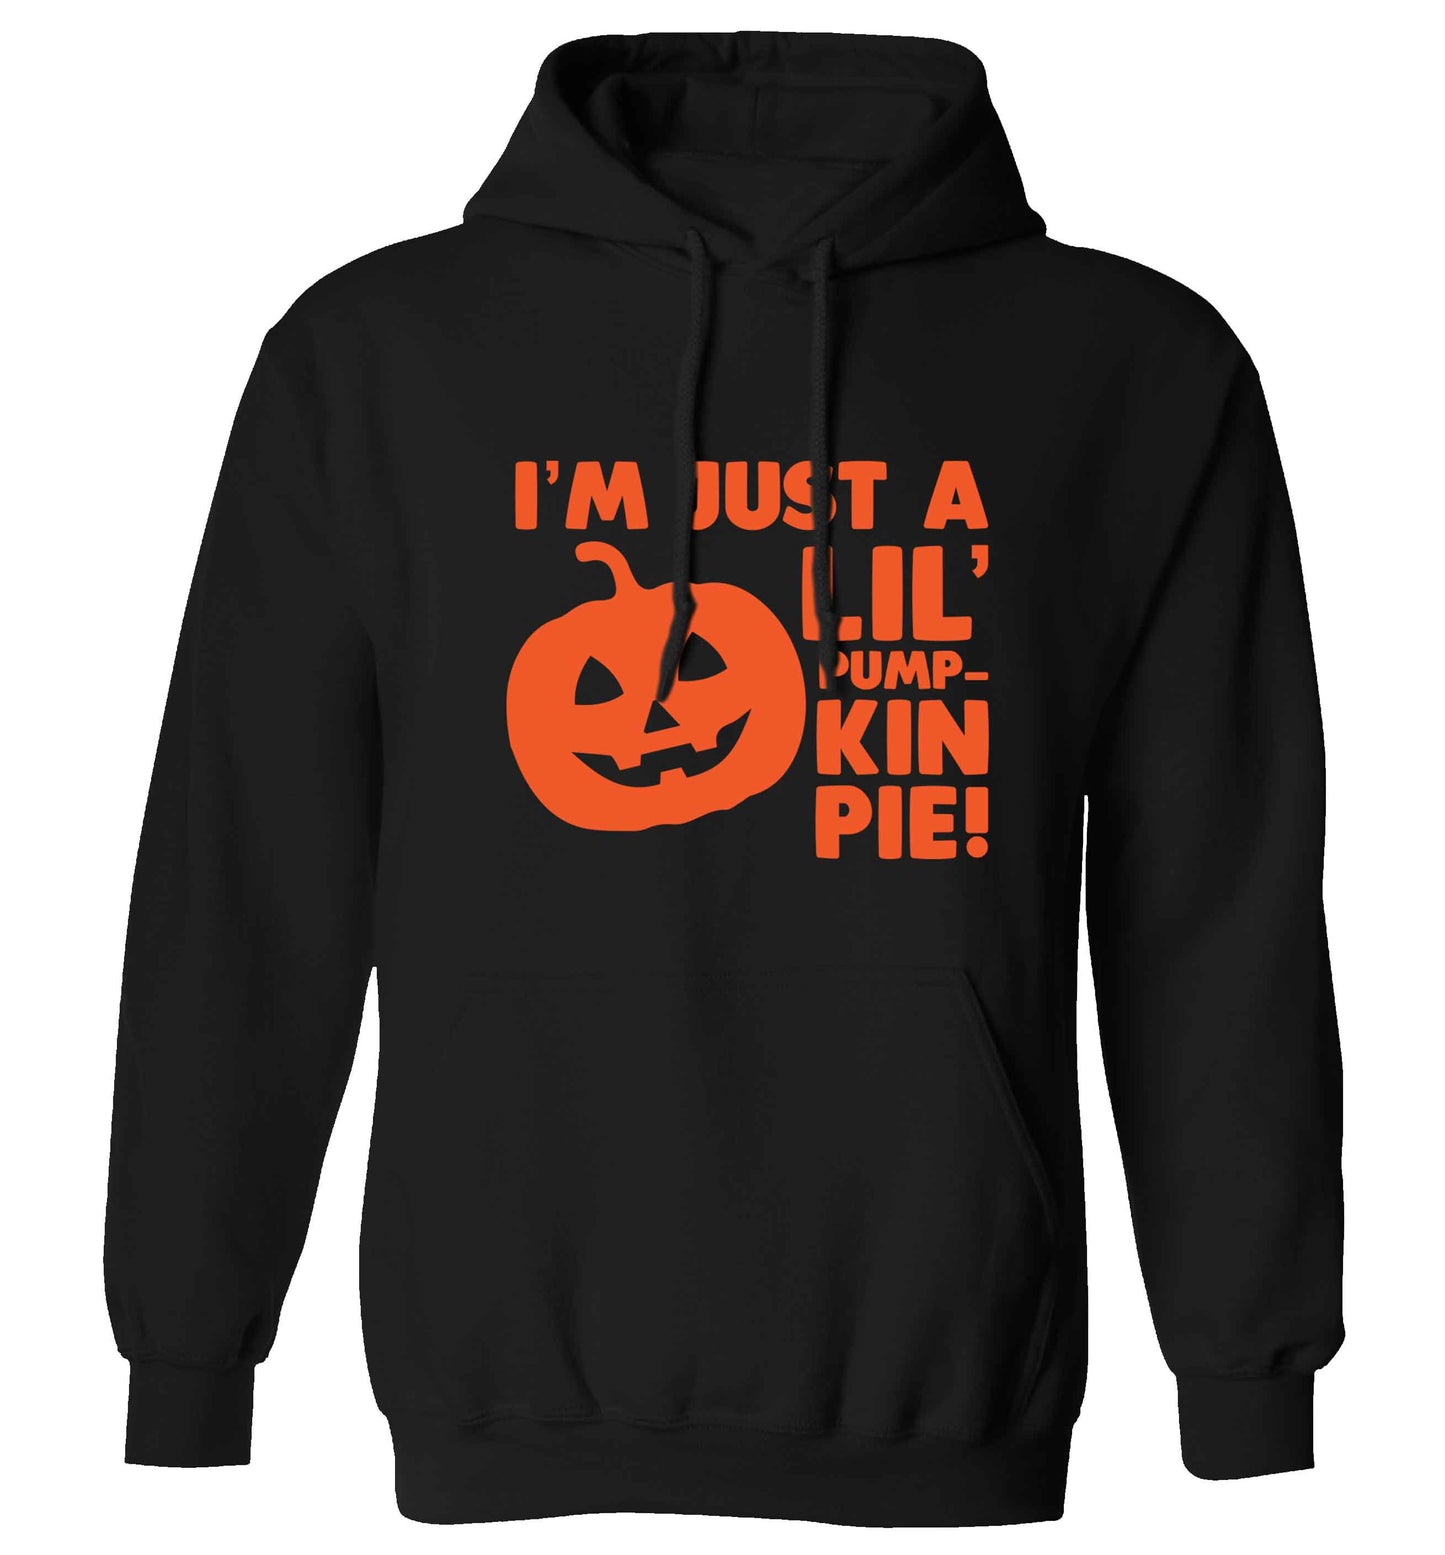 I'm just a lil' pumpkin pie adults unisex black hoodie 2XL